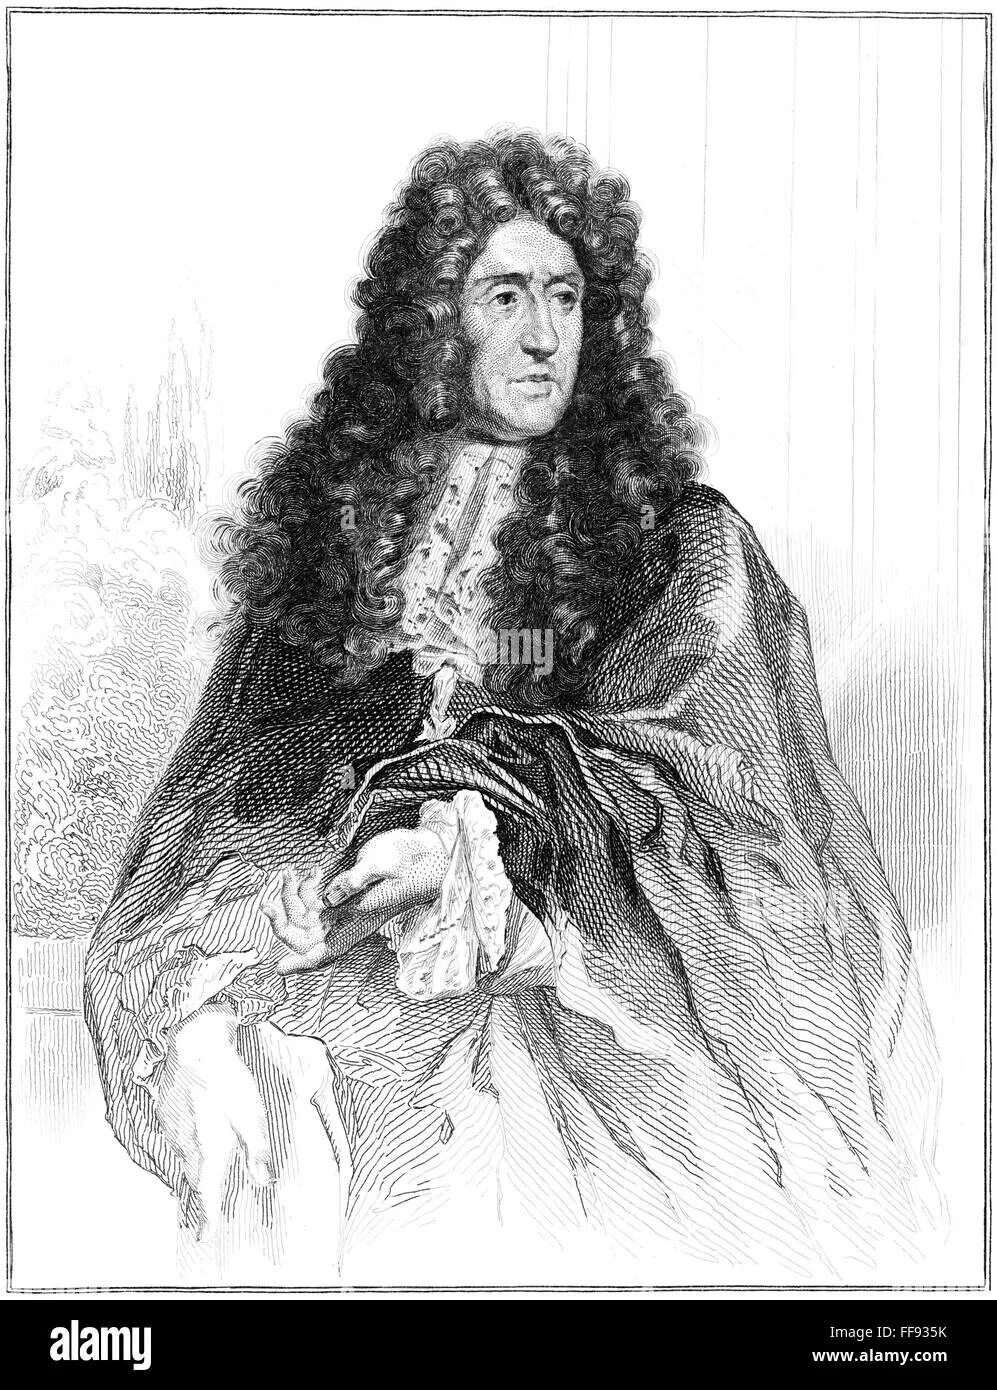 Андре ле нотр. Андре Ленотр (1613—1700). Андре Ленотр Архитектор. Портрет Андре Ленотра.